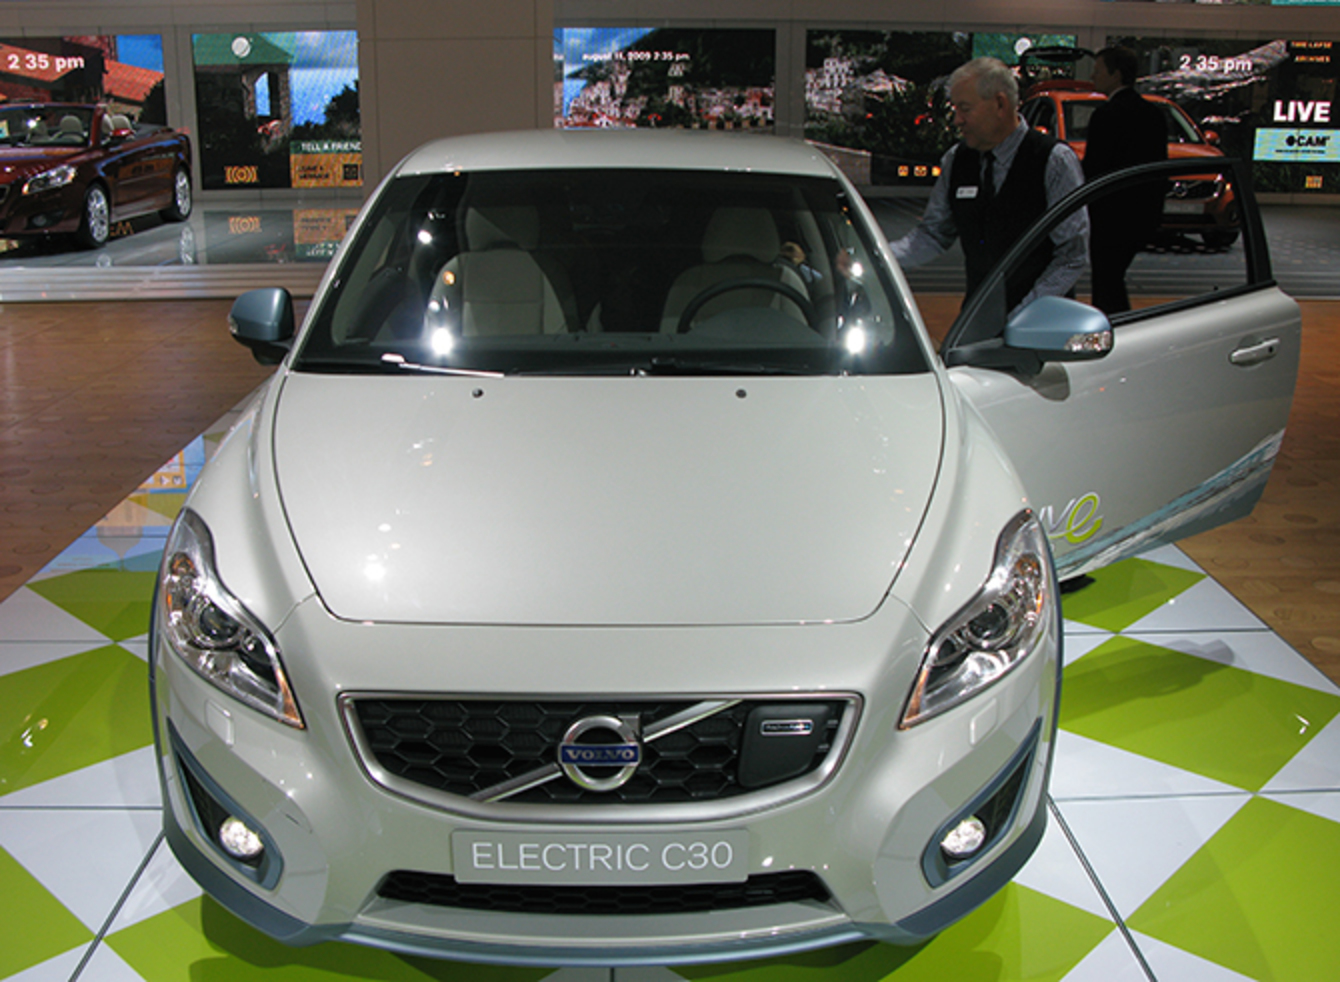 Volvo Electric car prototype